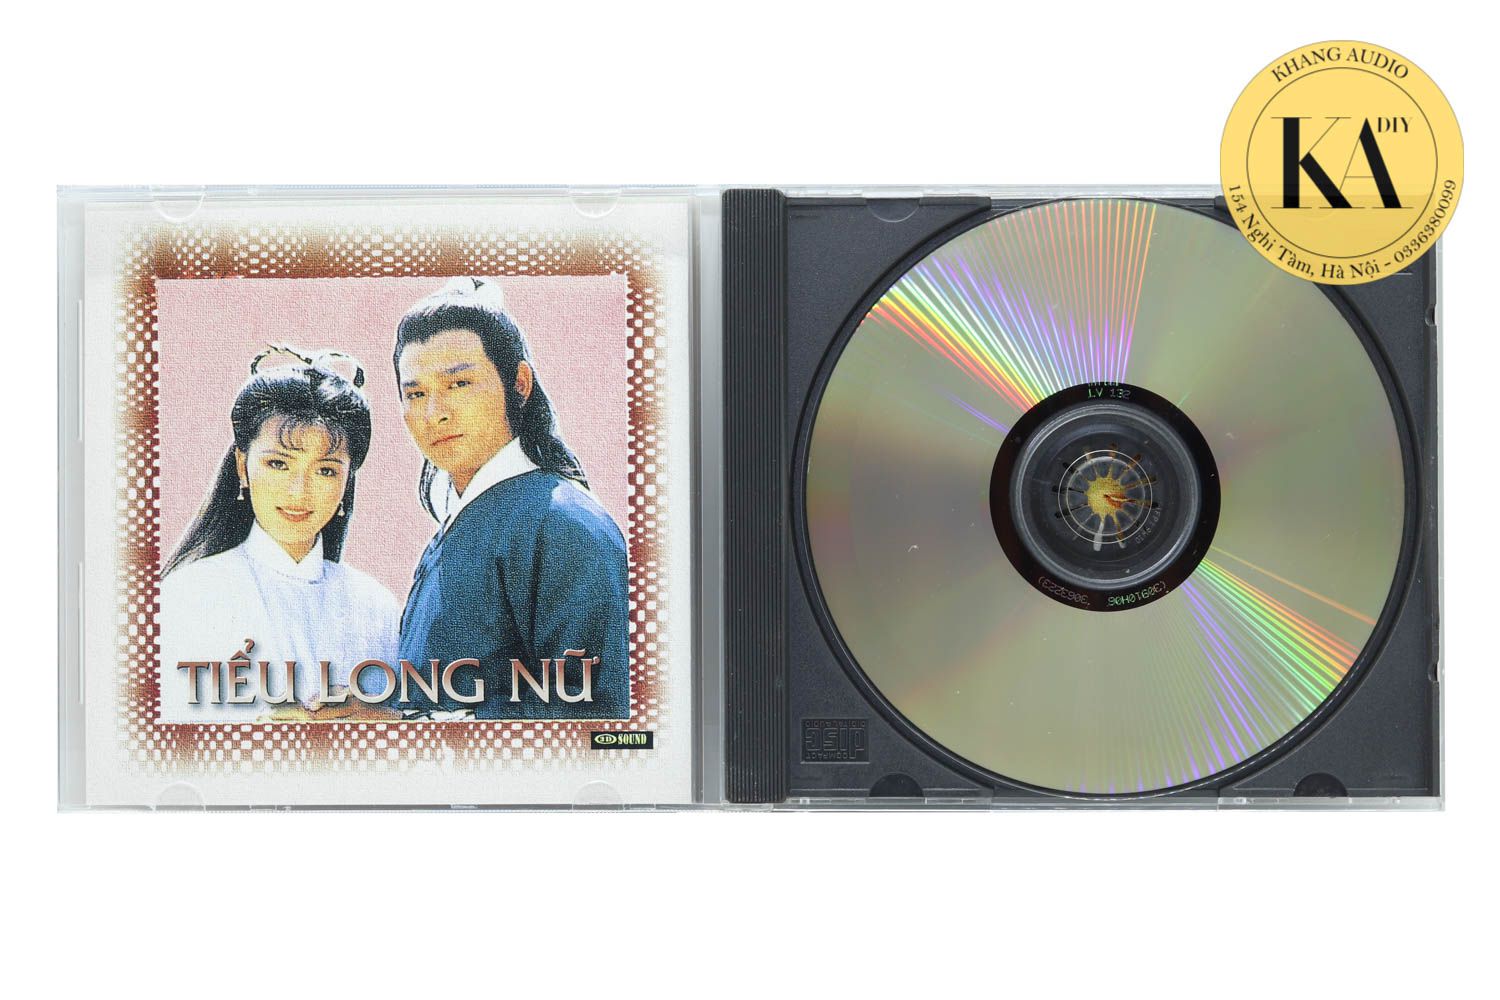 Nhạc Yêu Cầu 2 - Chế Linh Khang Audio 0336380099